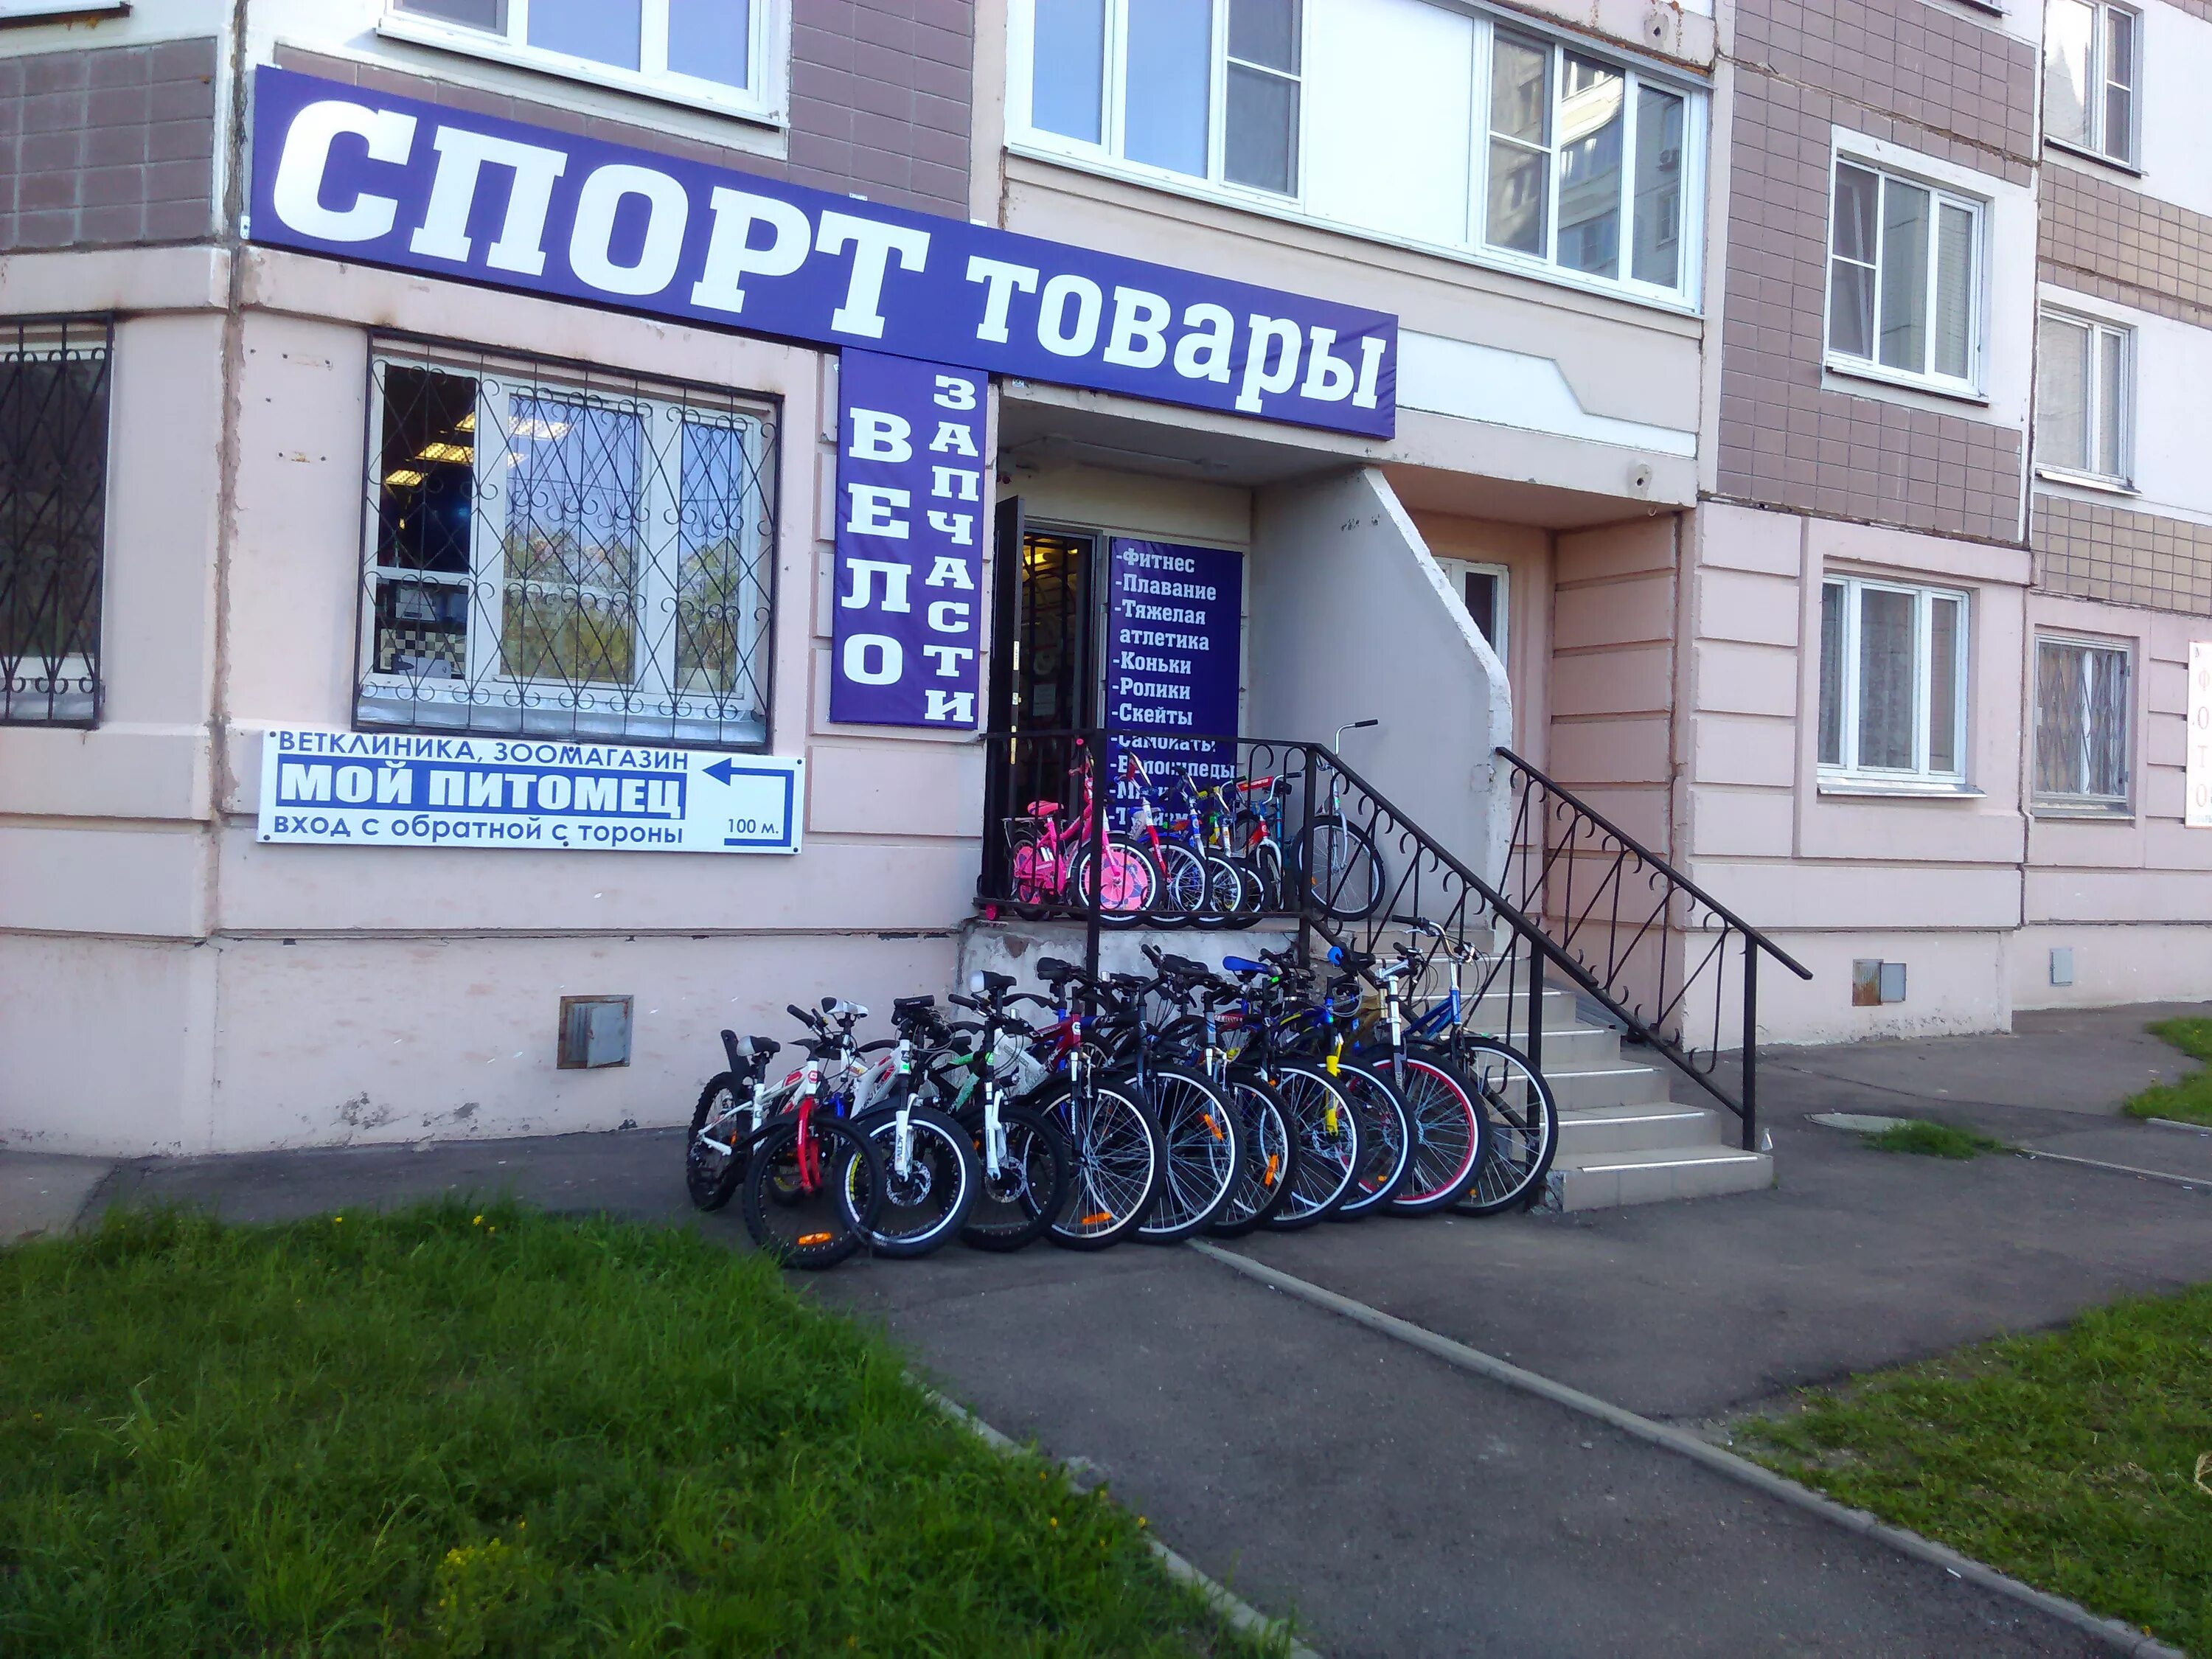 Ремонт велосипедов в москве рядом со мной